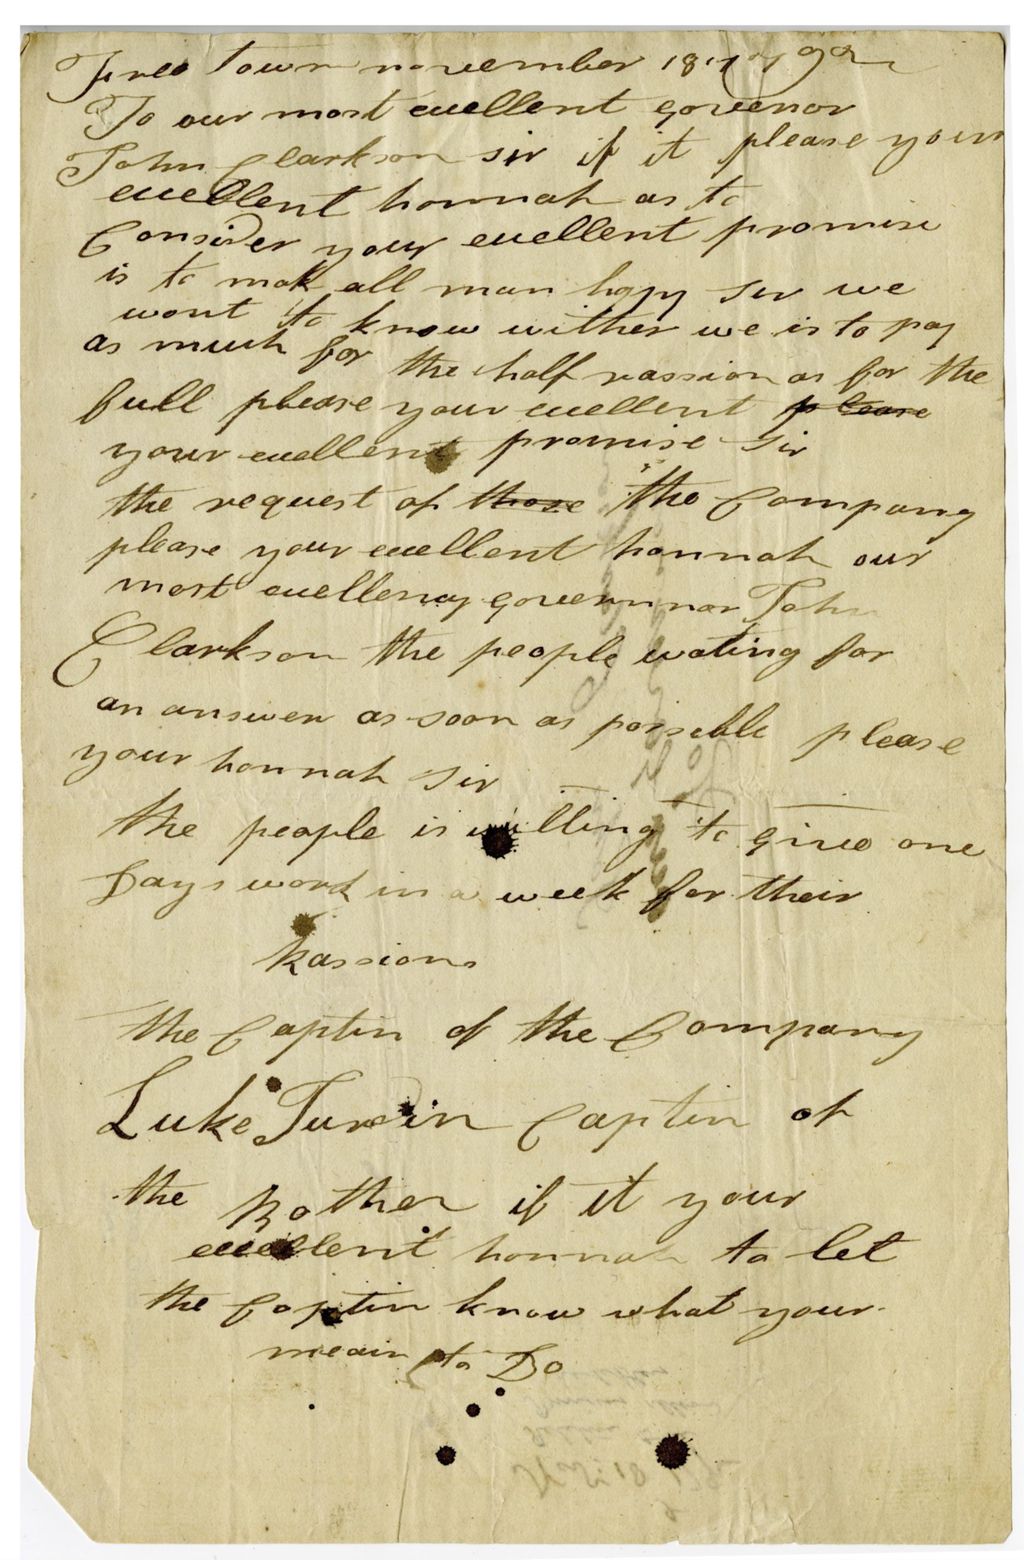 Letter to John Clarkson, November 18, 1792